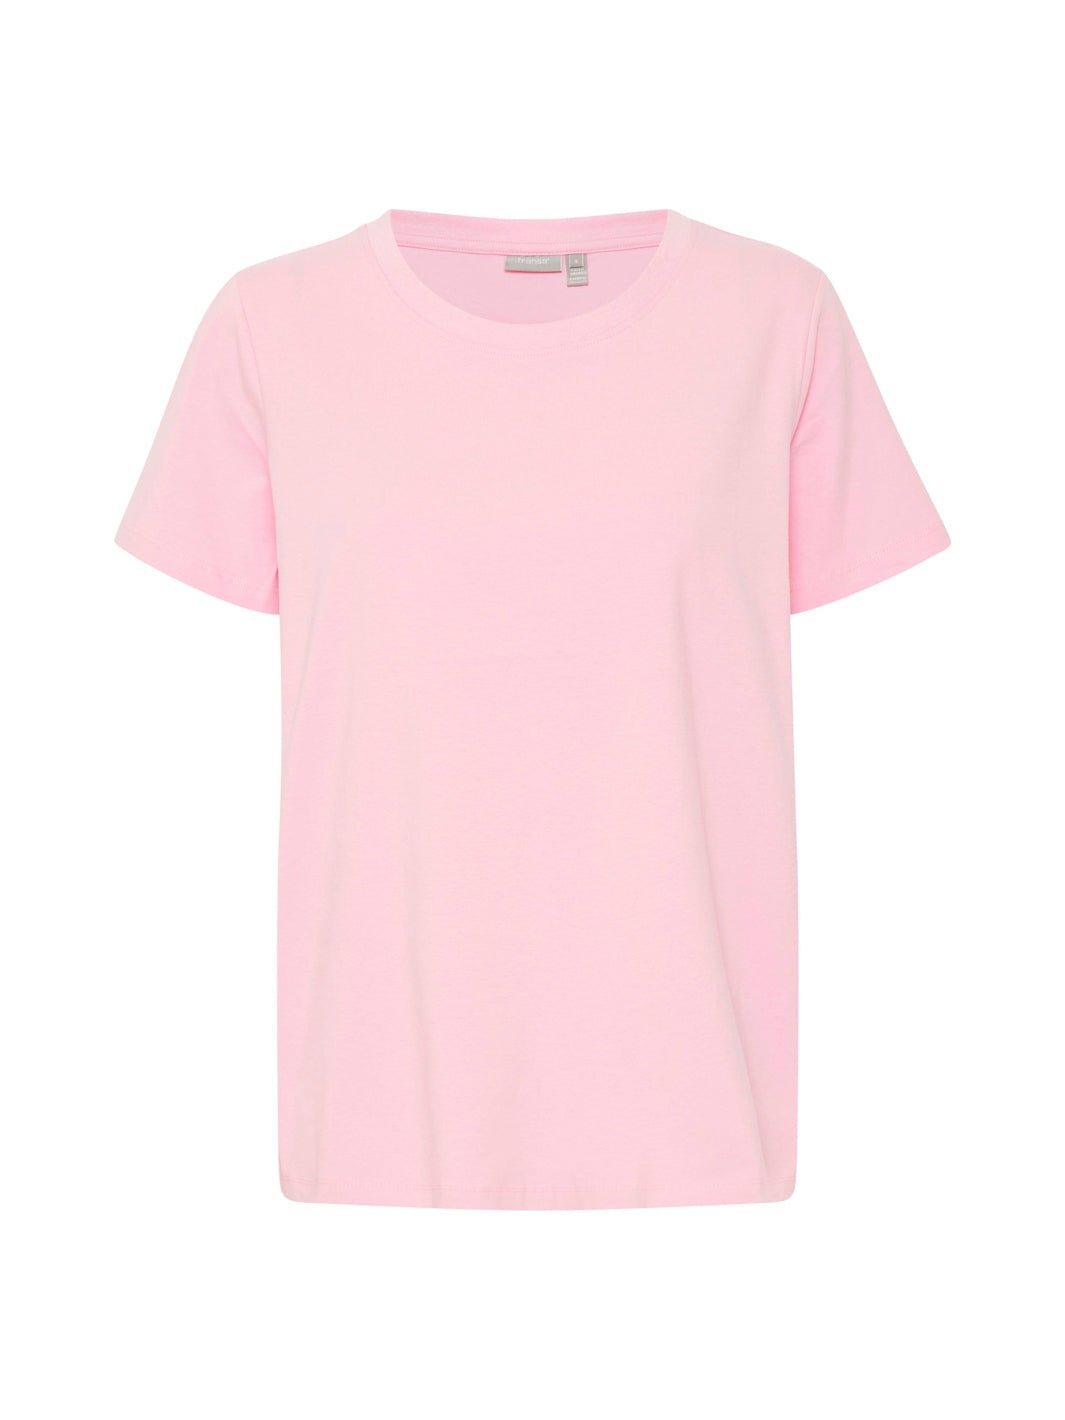 Fransa Zashoulder 1 t-shirt pink frosting - Online-Mode